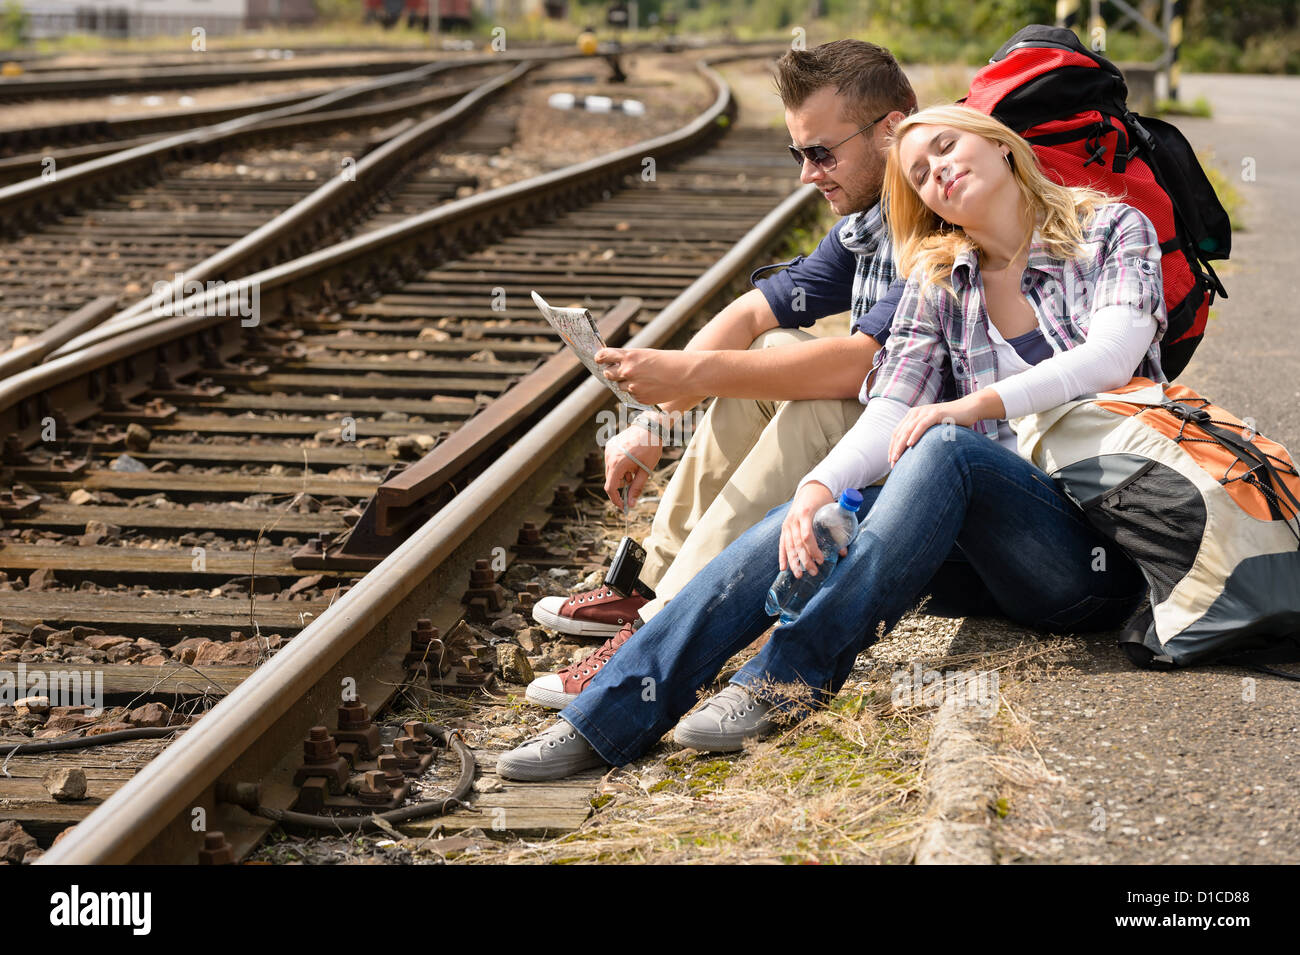 Свободная поездка. Рюкзак для путешествий на поезде. Сидеть на картах фото. Кот с.рюкзаком у железной дороги с девочкой. Человек сидит на картах.